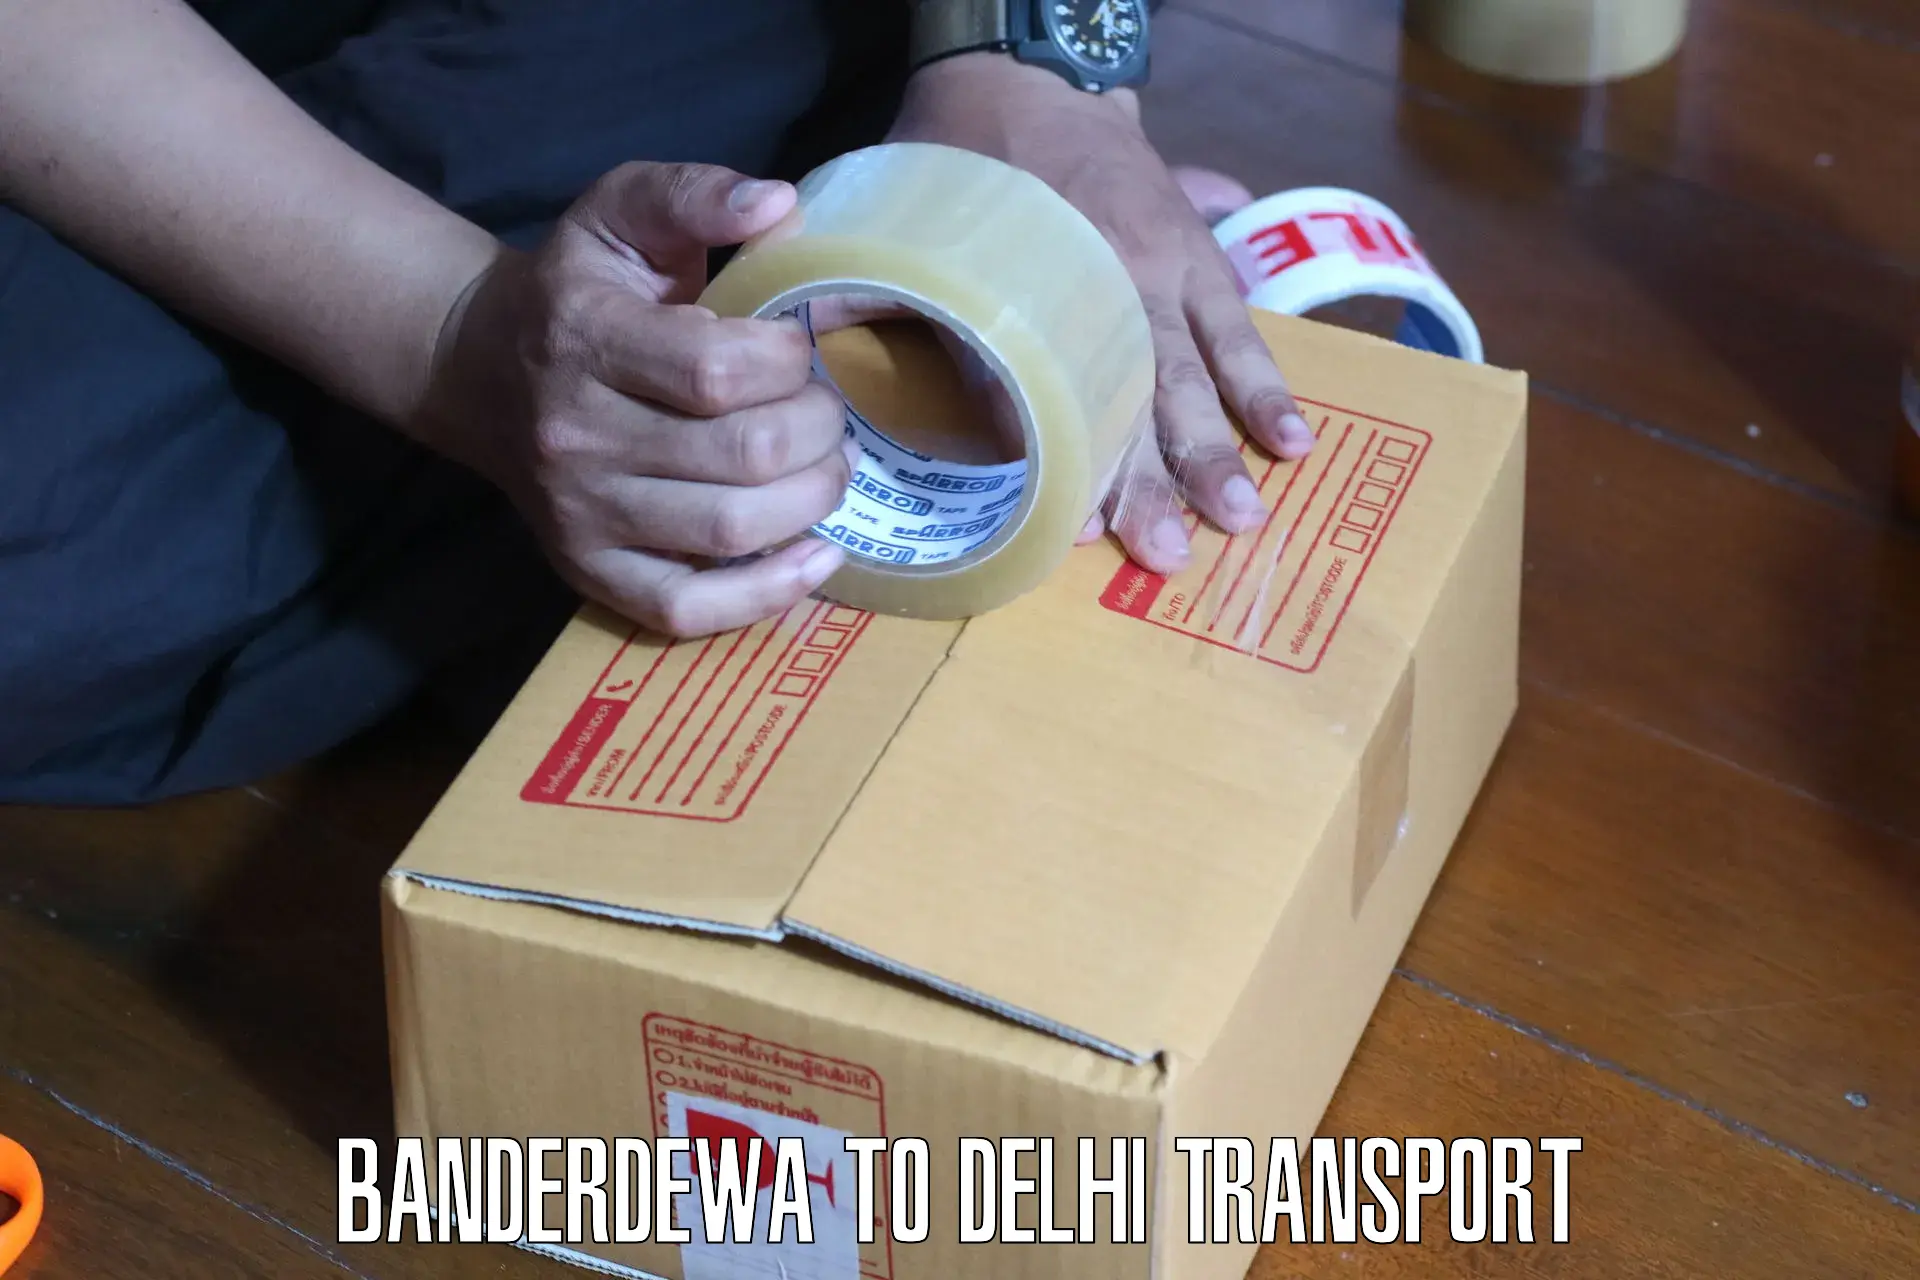 Online transport Banderdewa to Delhi